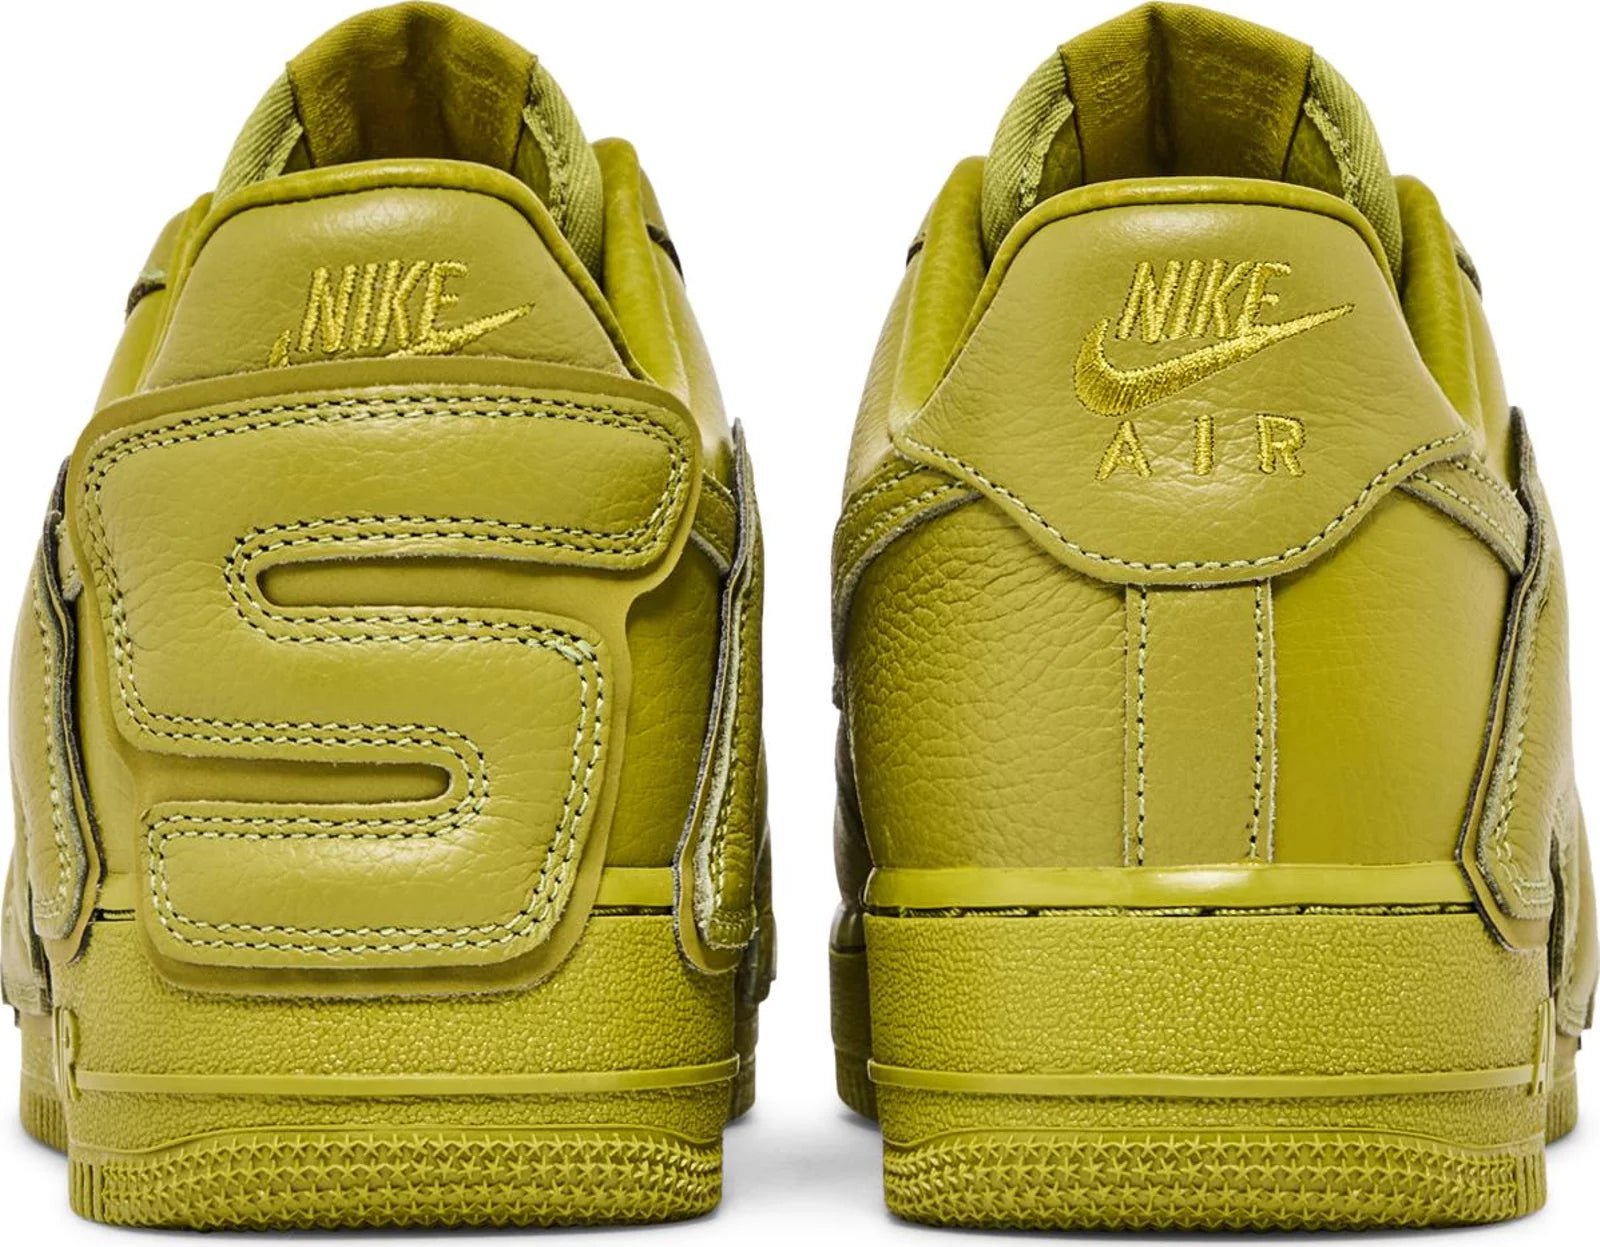 Nike Air Force 1 Low Cactus Plant Flea Market Moss - Sneakersbe Sneakers Sale Online